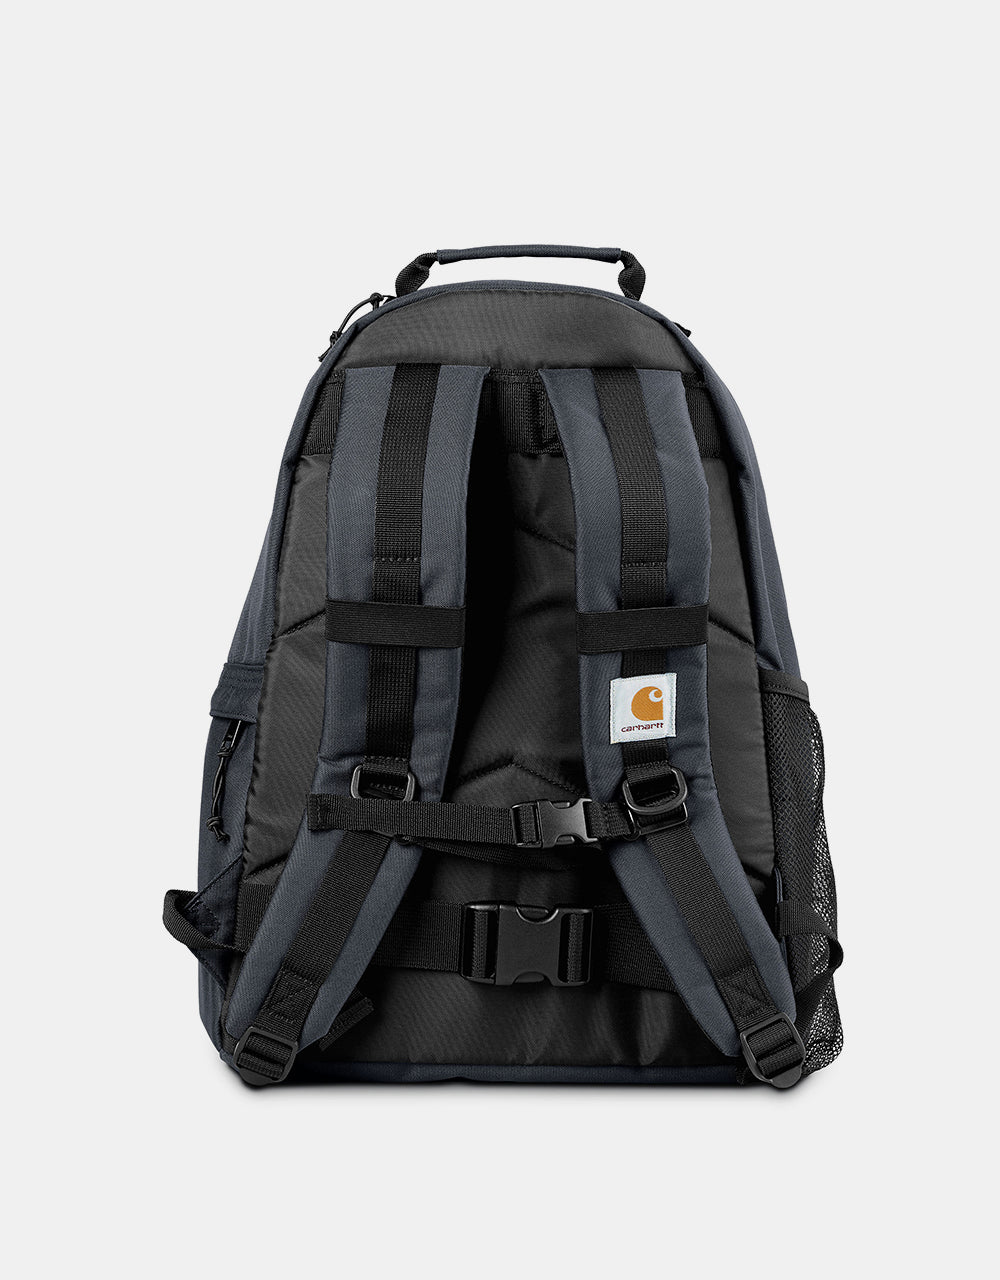 Carhartt WIP Kickflip Backpack - Zeus